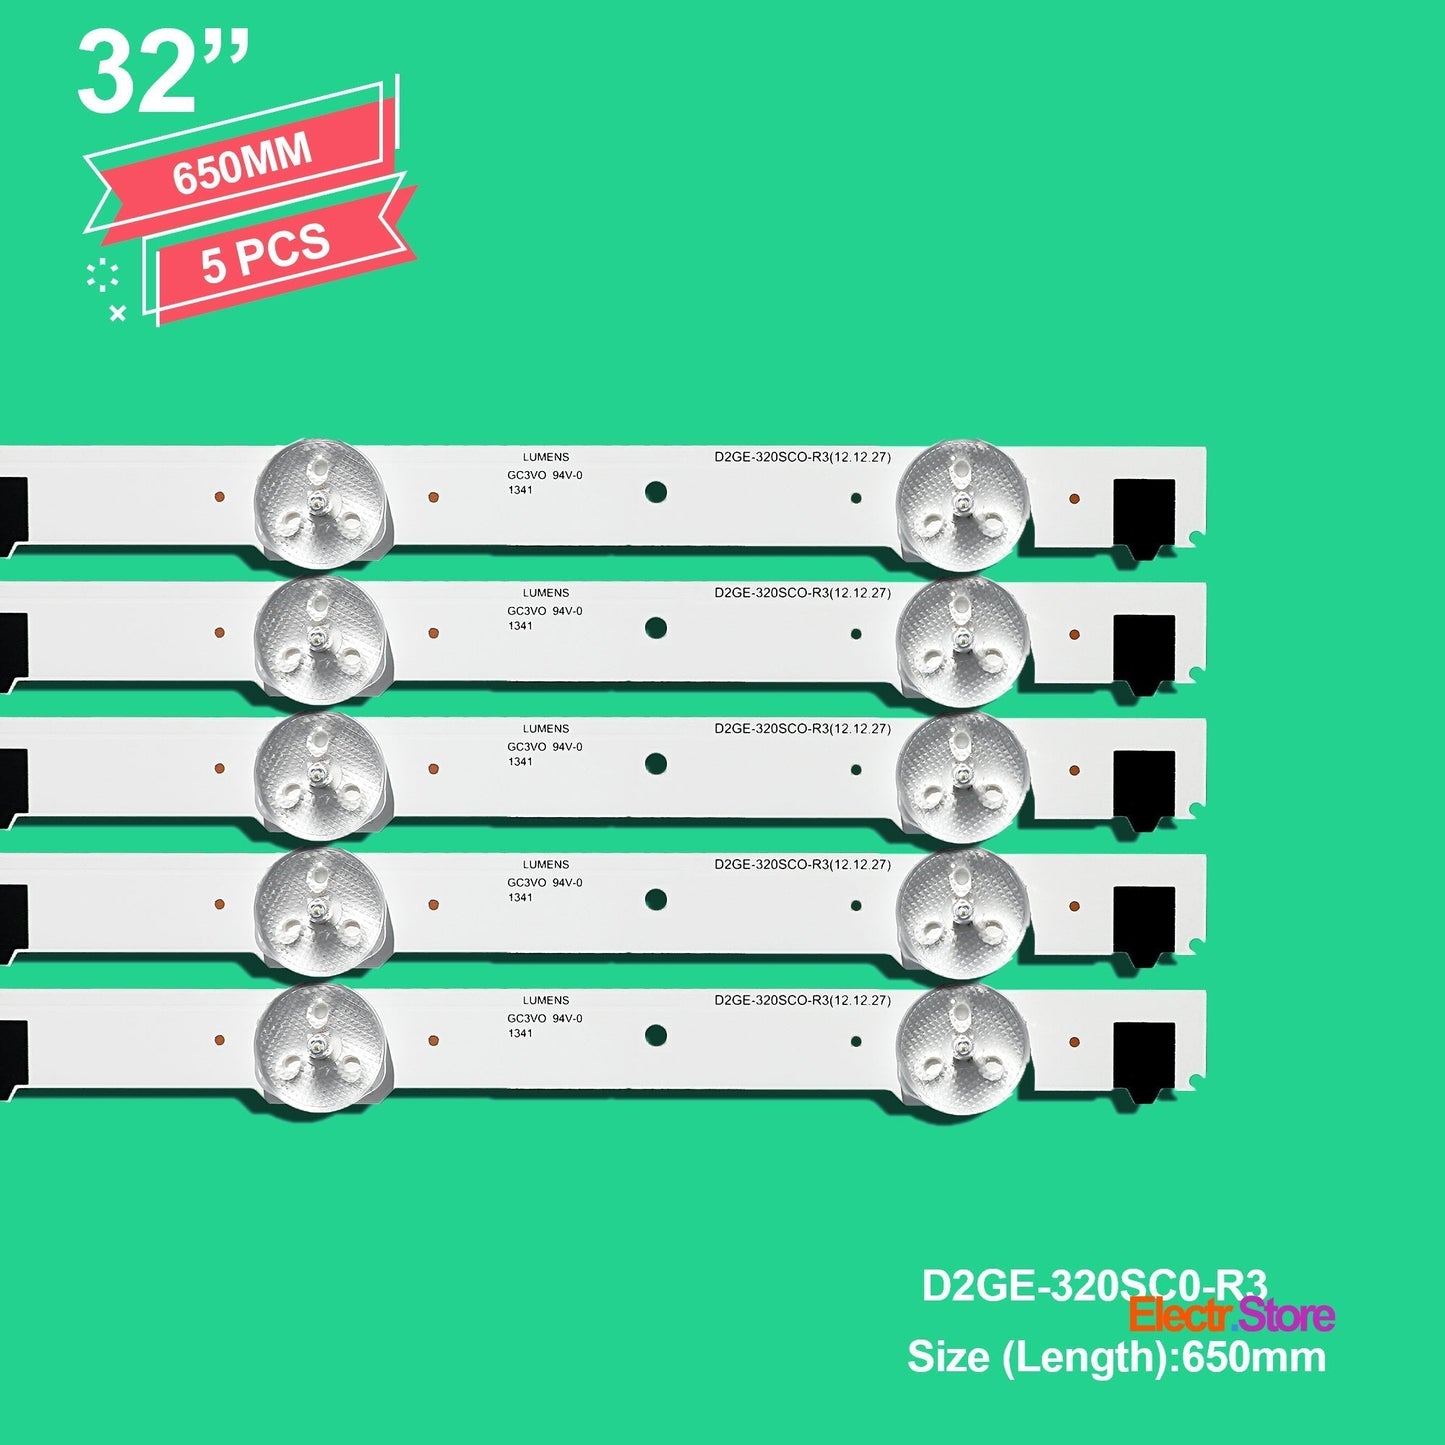 LED Backlight Strip Kits, 2013SVS32F, 2013SVS32H, BN96-28489A, BN96-25300A, BN96-25299A, D2GE-320SC0-R3 (5 pcs/kit), for TV 32" SAMSUNG: UE32F5070, UE32F6270, UE32F4570, UE32F5370 32" D2GE-320SC0-R3 LED Backlights Samsung Electr.Store